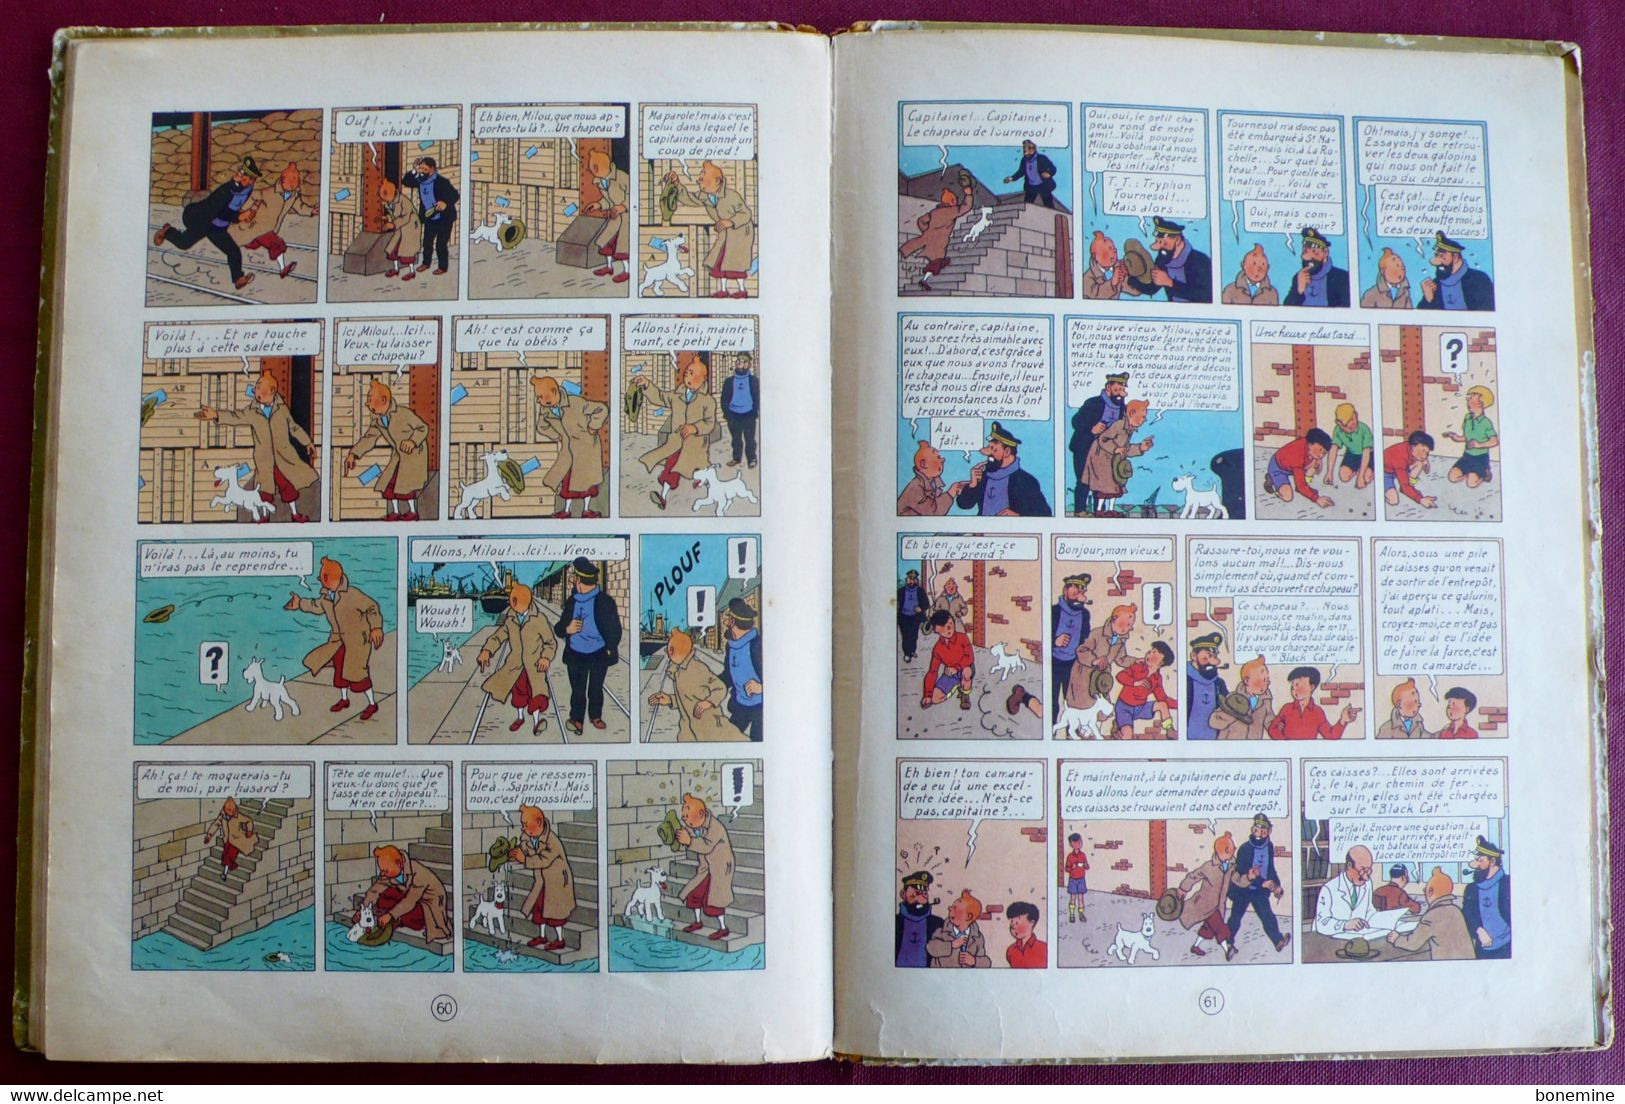 Tintin Les 7 Boules de Cristal B2 1948 titre Noir